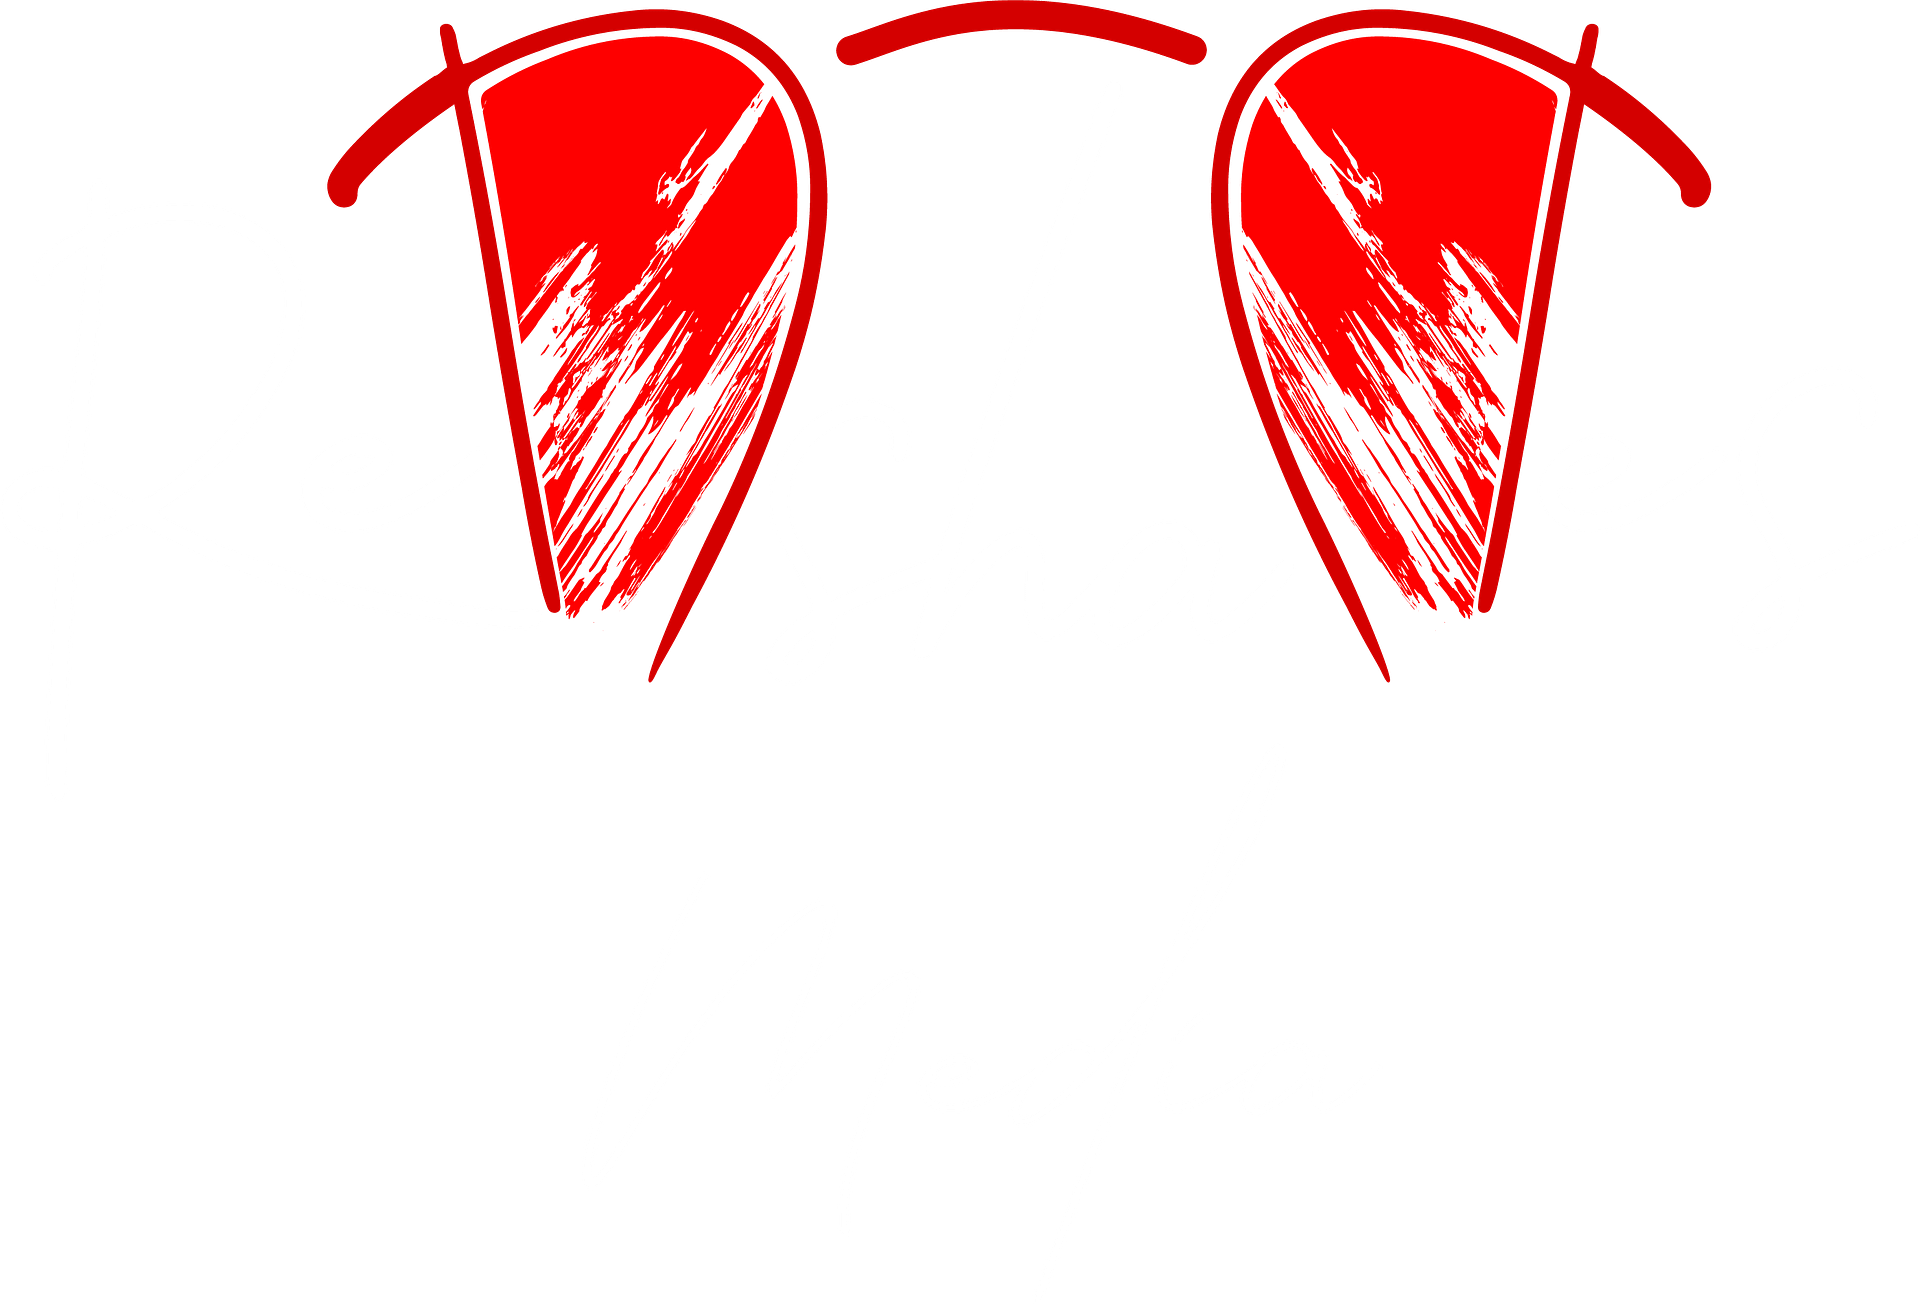 Red Shades Media